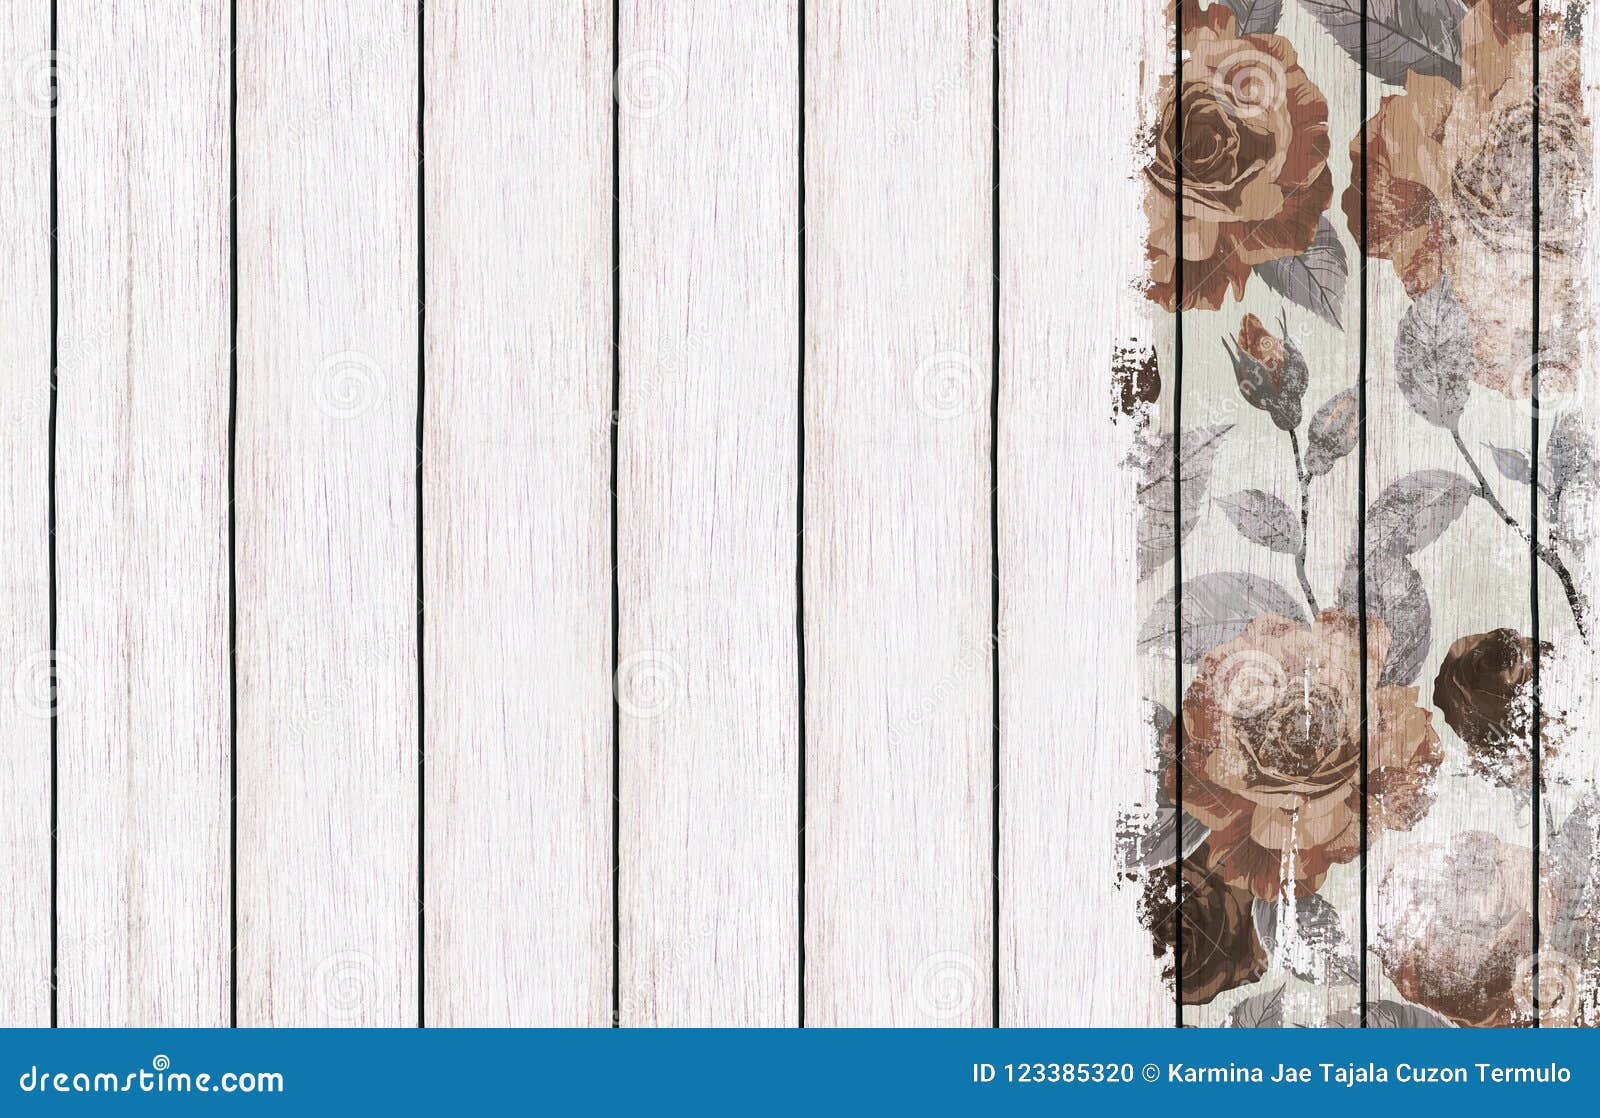 Hình nền gỗ sơn với thiết kế hoa văn: Tuyệt đẹp và tinh tế, đó là những mẫu hình nền gỗ sơn với thiết kế hoa văn tại bộ sưu tập của chúng tôi. Sự kết hợp giữa họa tiết hoa văn cùng với màu sắc ấm áp của gỗ sẽ mang lại cho không gian của bạn một cảm giác gia đình và chân thành.